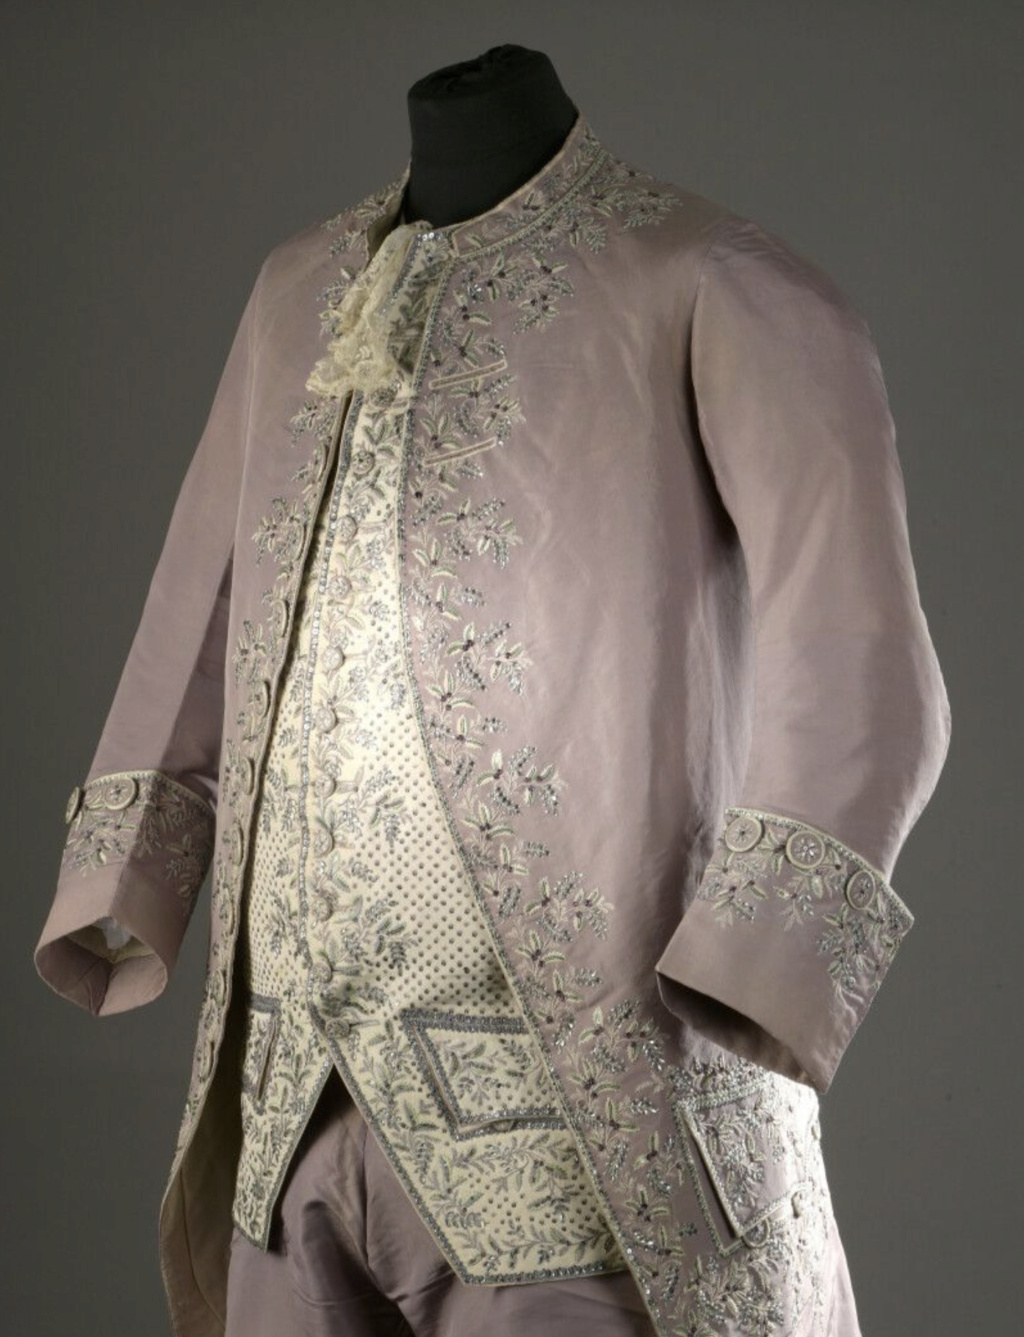 La mode et les habits masculins au XVIIIe siècle - Page 4 Capt3271